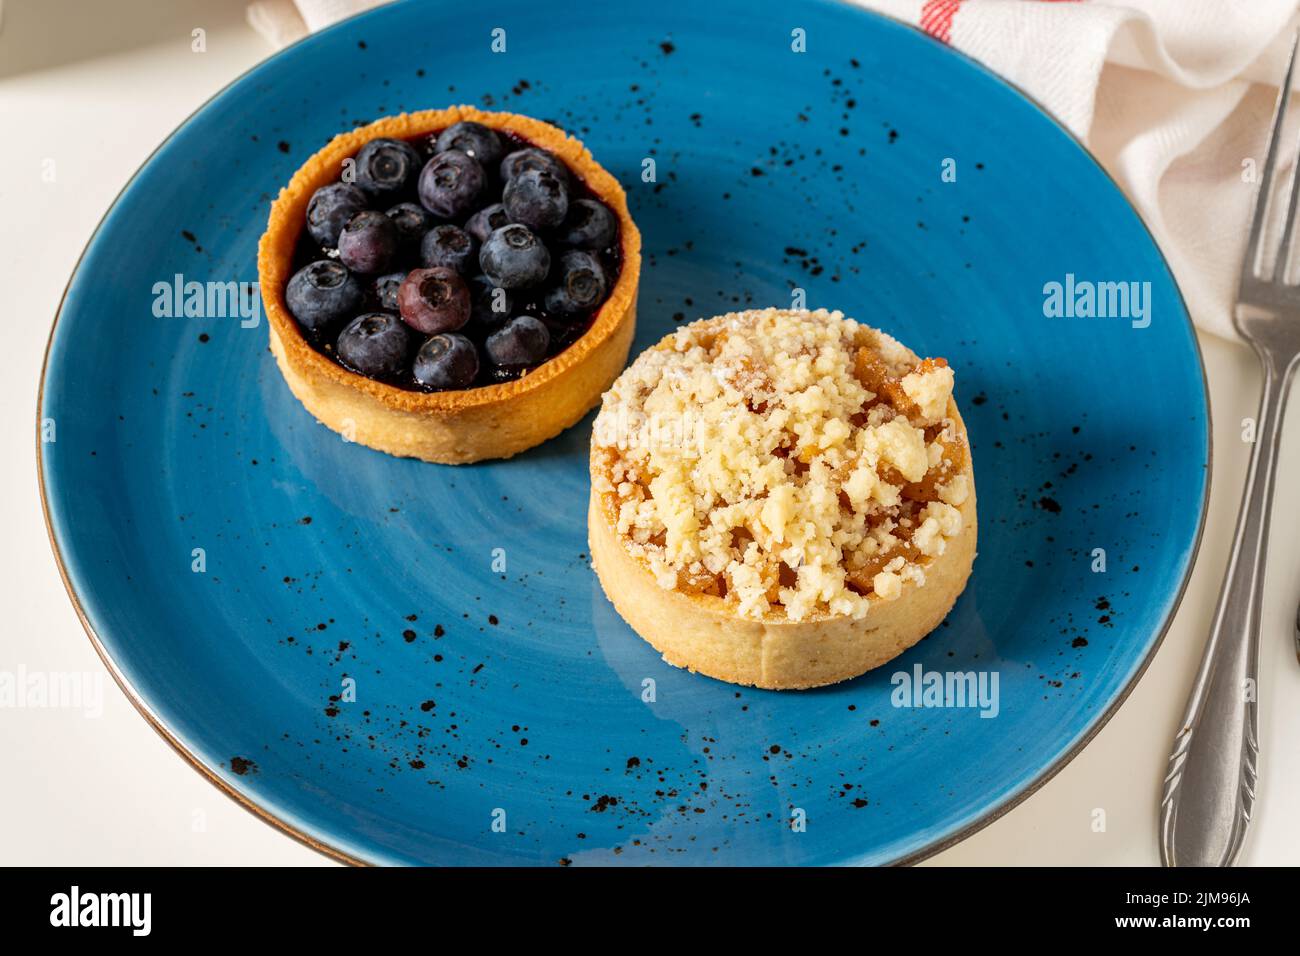 Una porción recién horneada de pastel de arándanos y manzana en un plato de porcelana azul Foto de stock